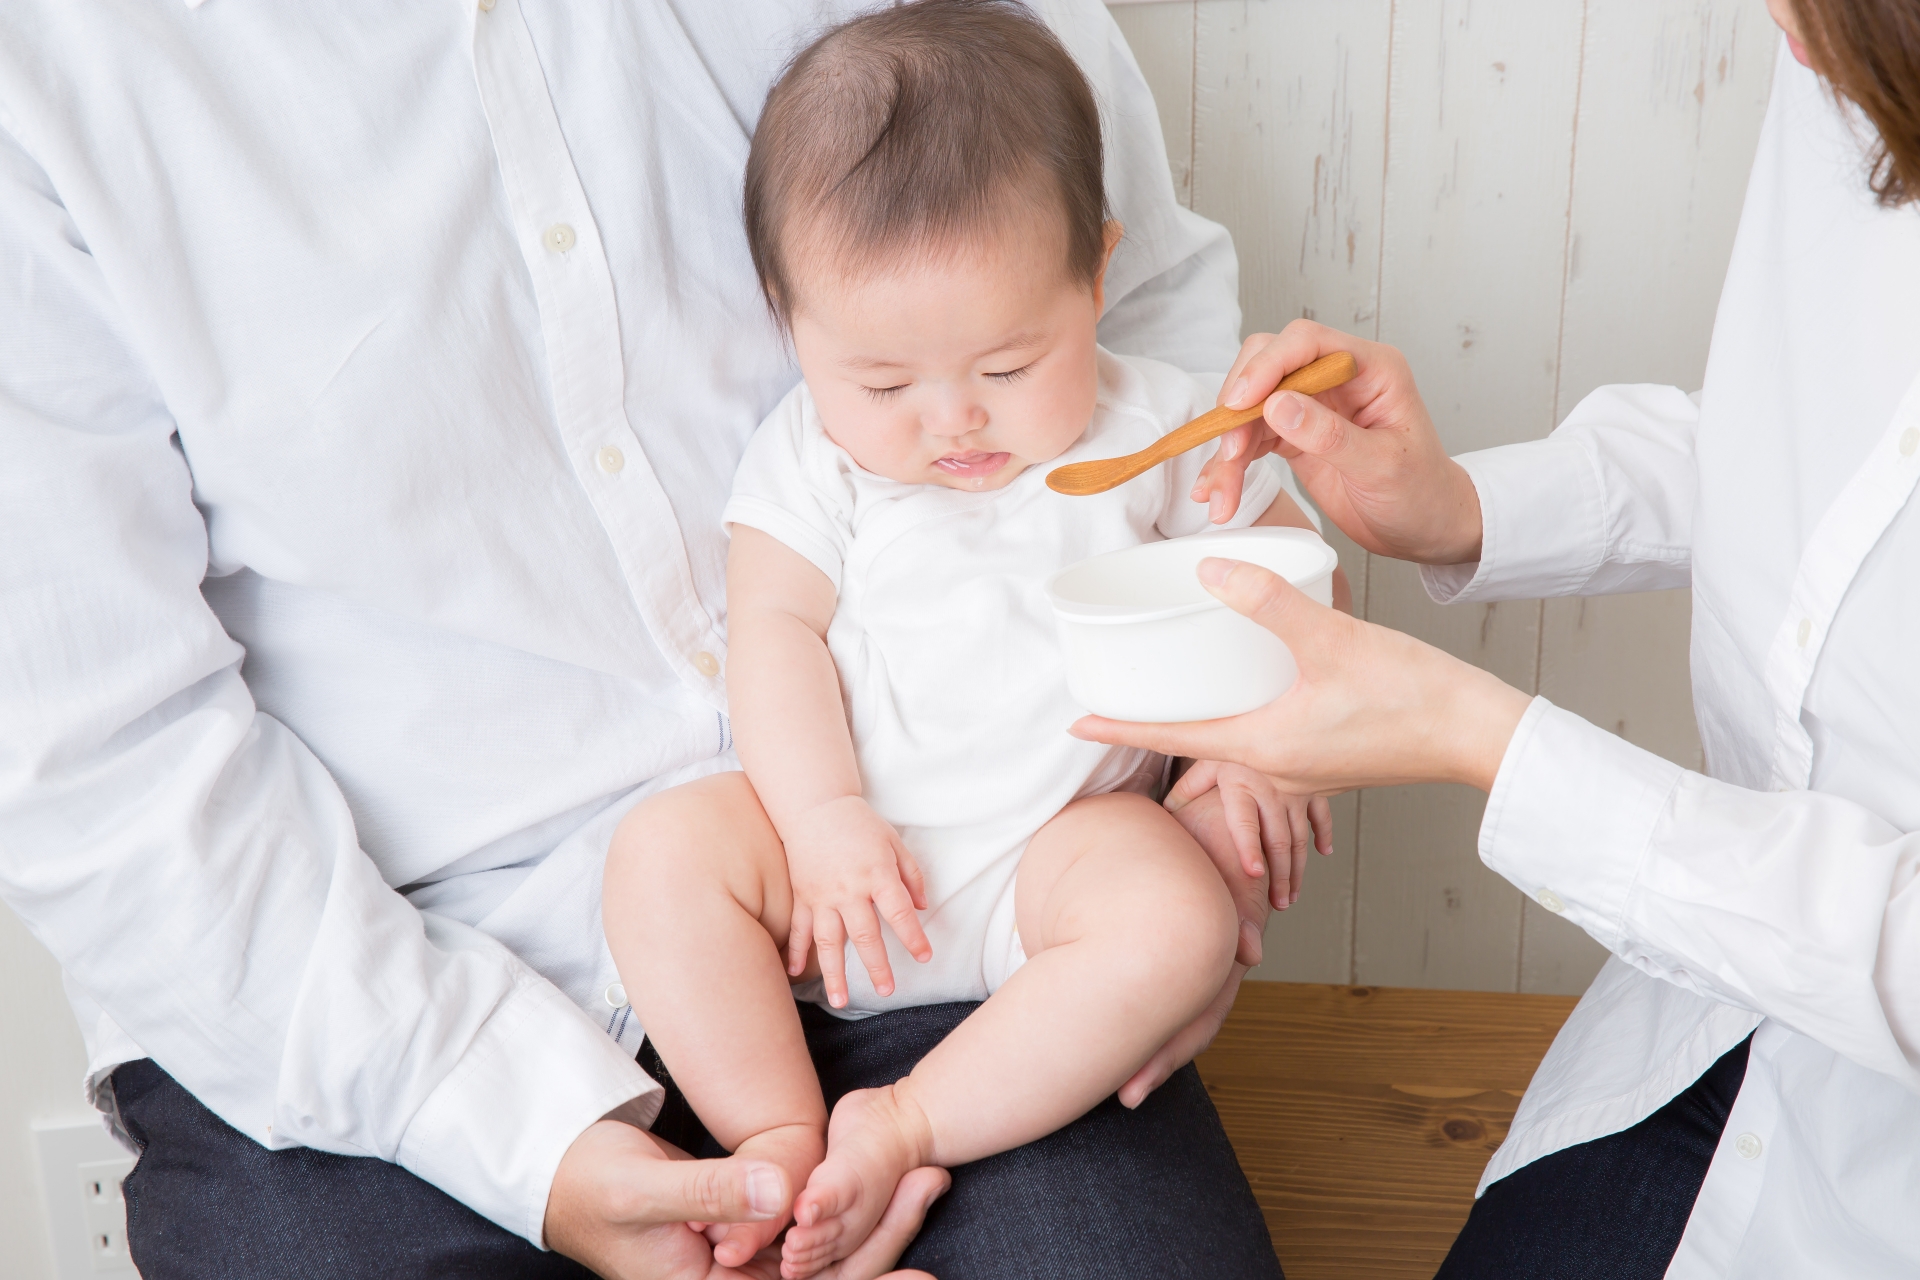 8ヶ月の赤ちゃん【モグモグ期】が離乳食食べない理由と対処法